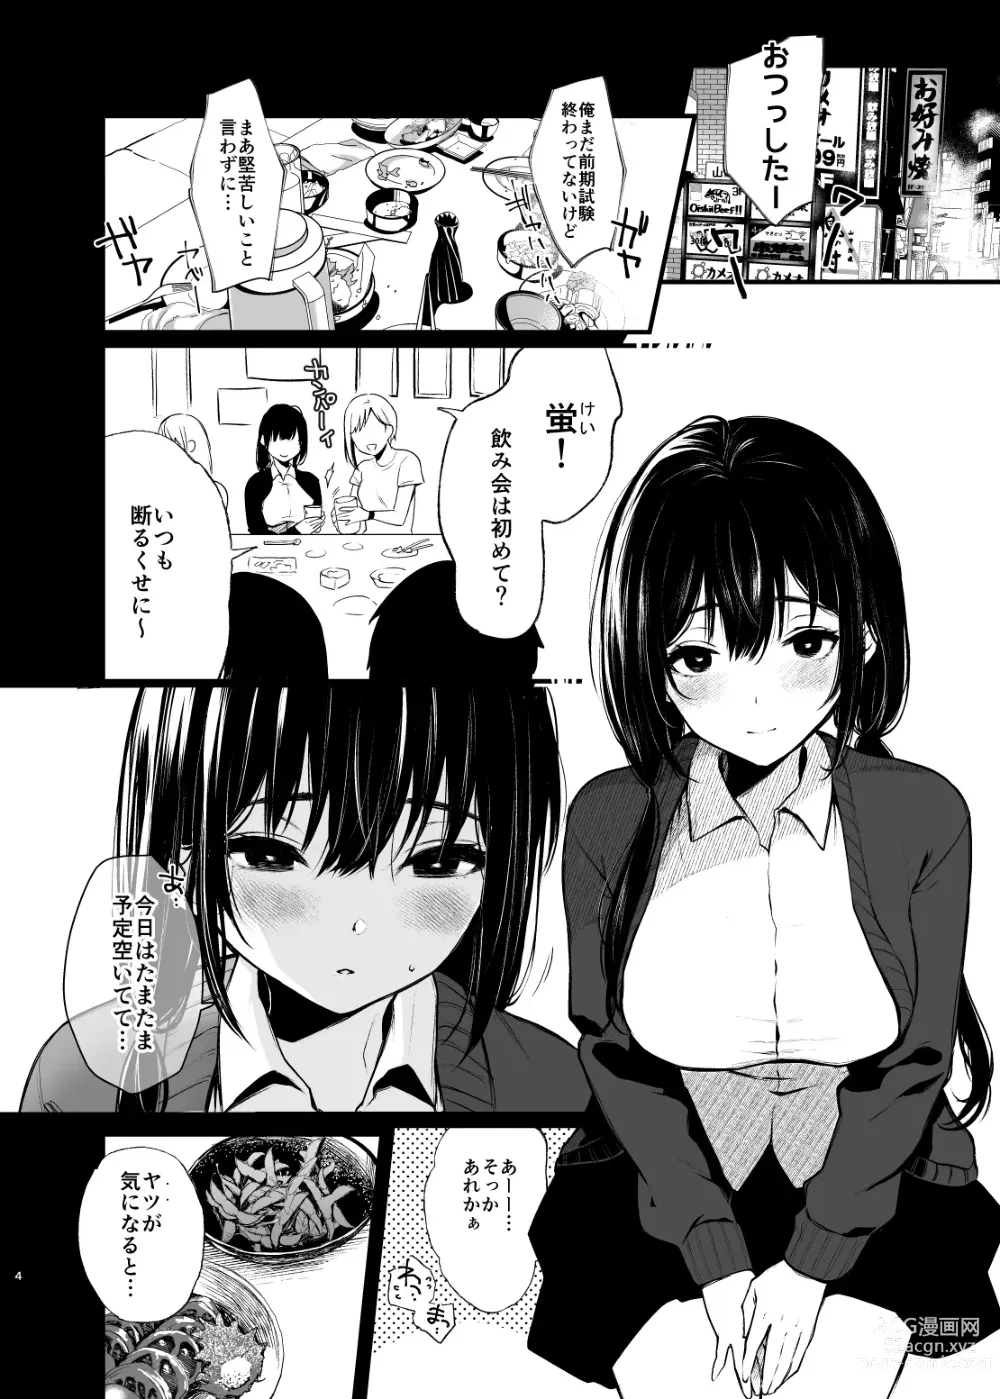 Page 4 of doujinshi Sore wa Hi ni Iru Natsu no Mushi